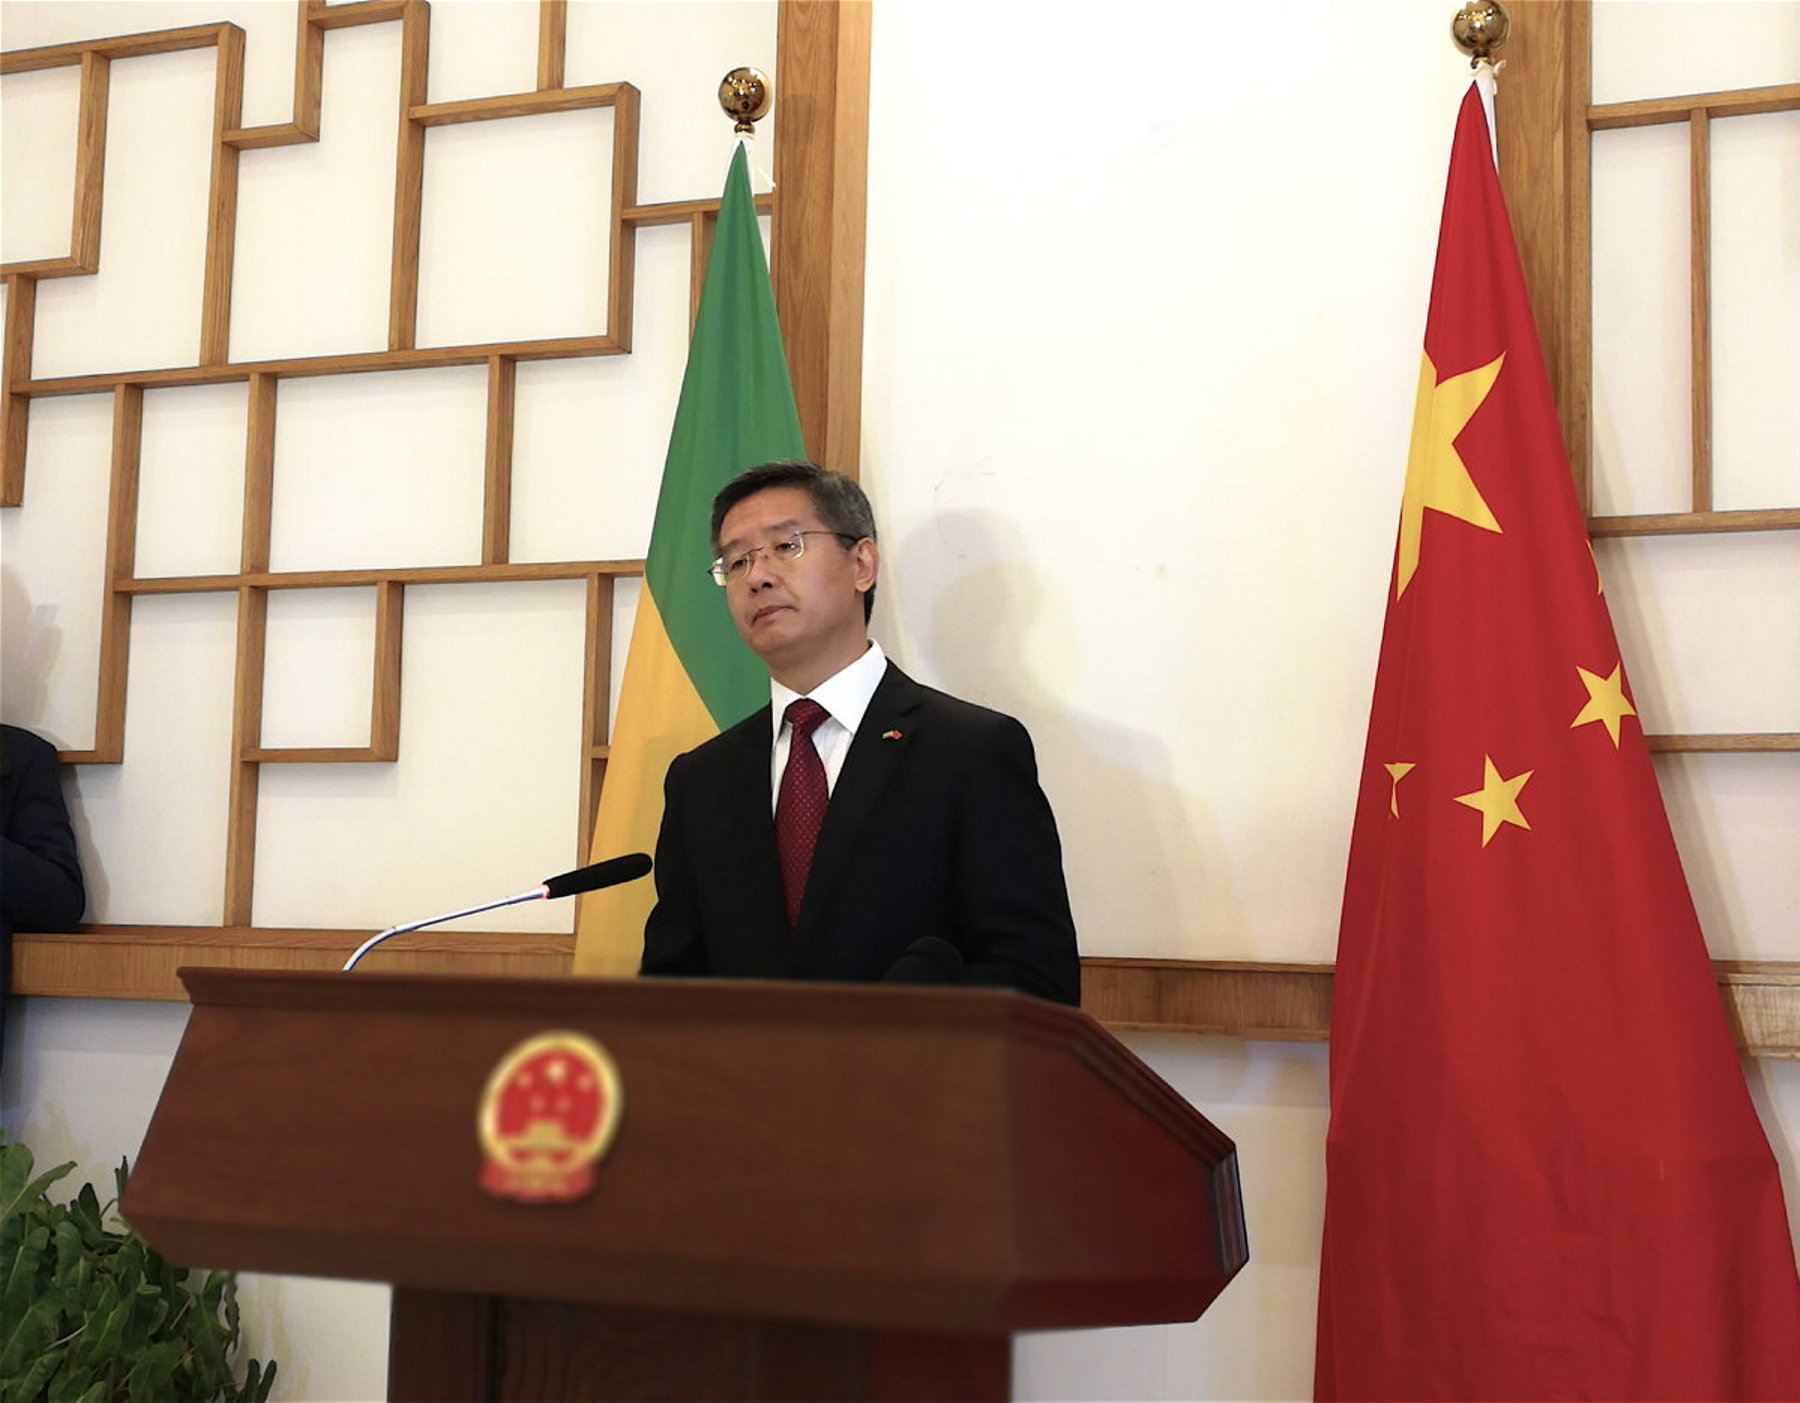 Stabilité et paix dans le monde : Li Jinjin précise la vision de la Chine